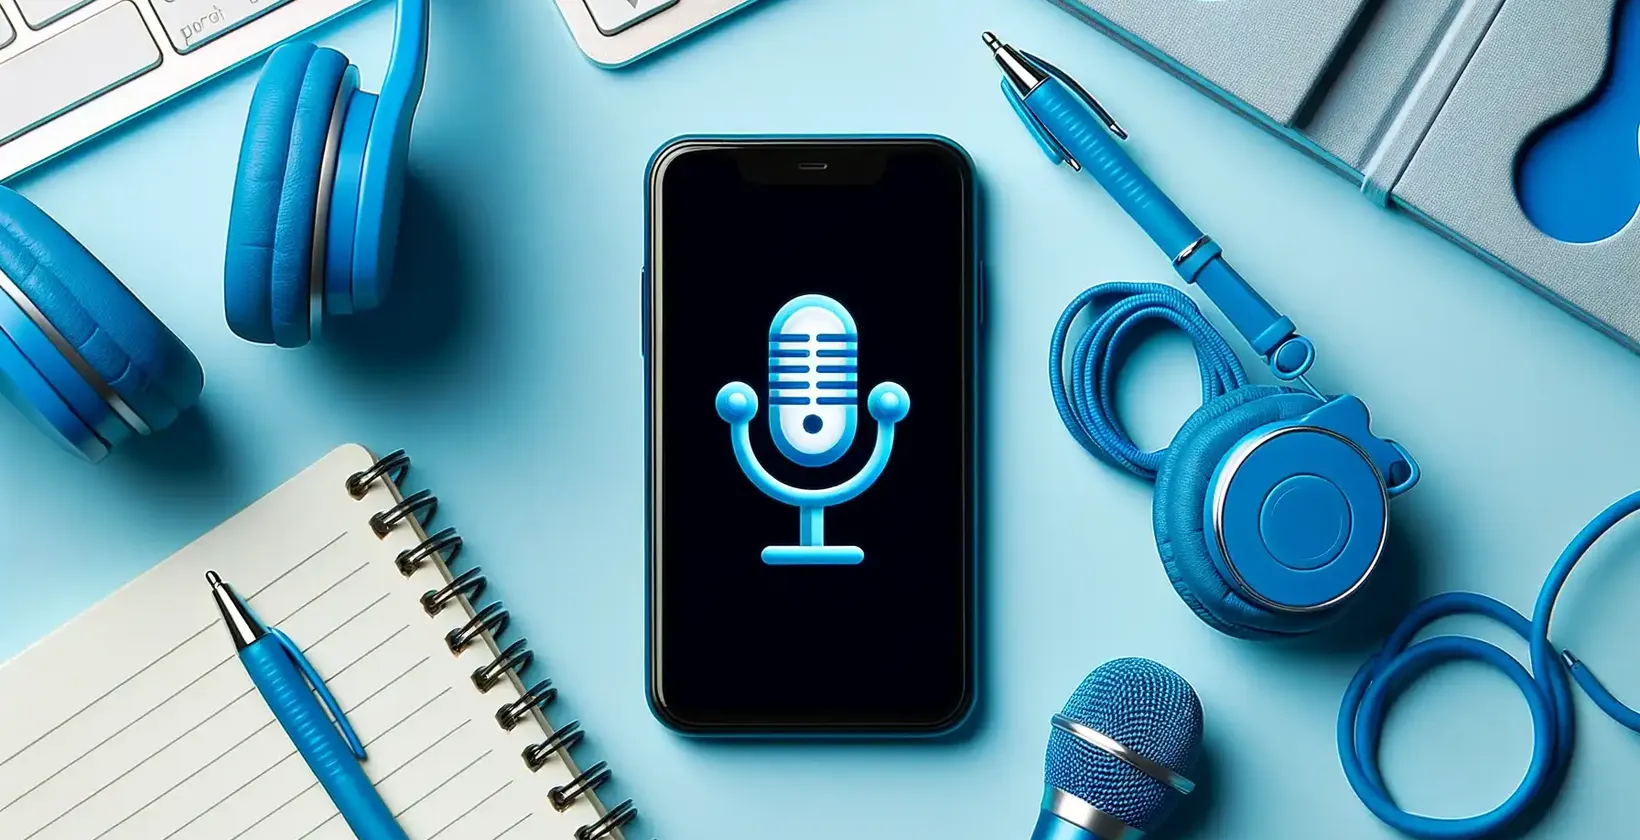 App-to-transcribe-audio mostrata su uno smartphone con cuffie blu, blocco note e accessori tecnologici.